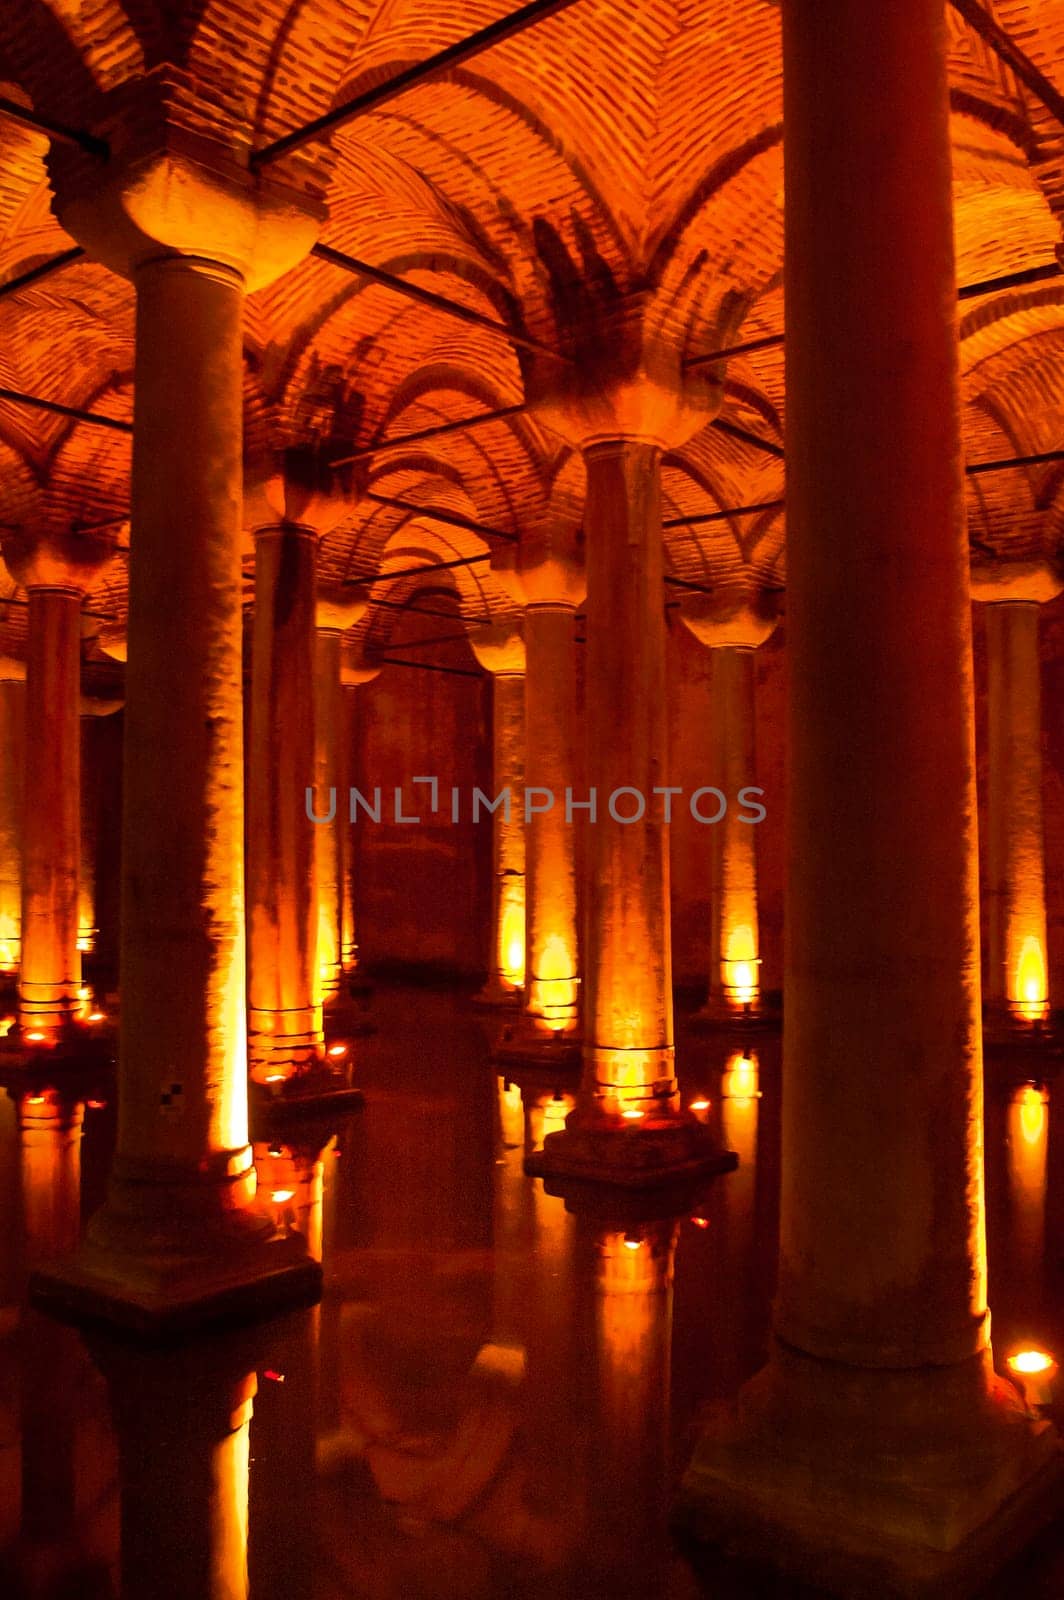 Basilica Cistern in Istanbul, Turkey